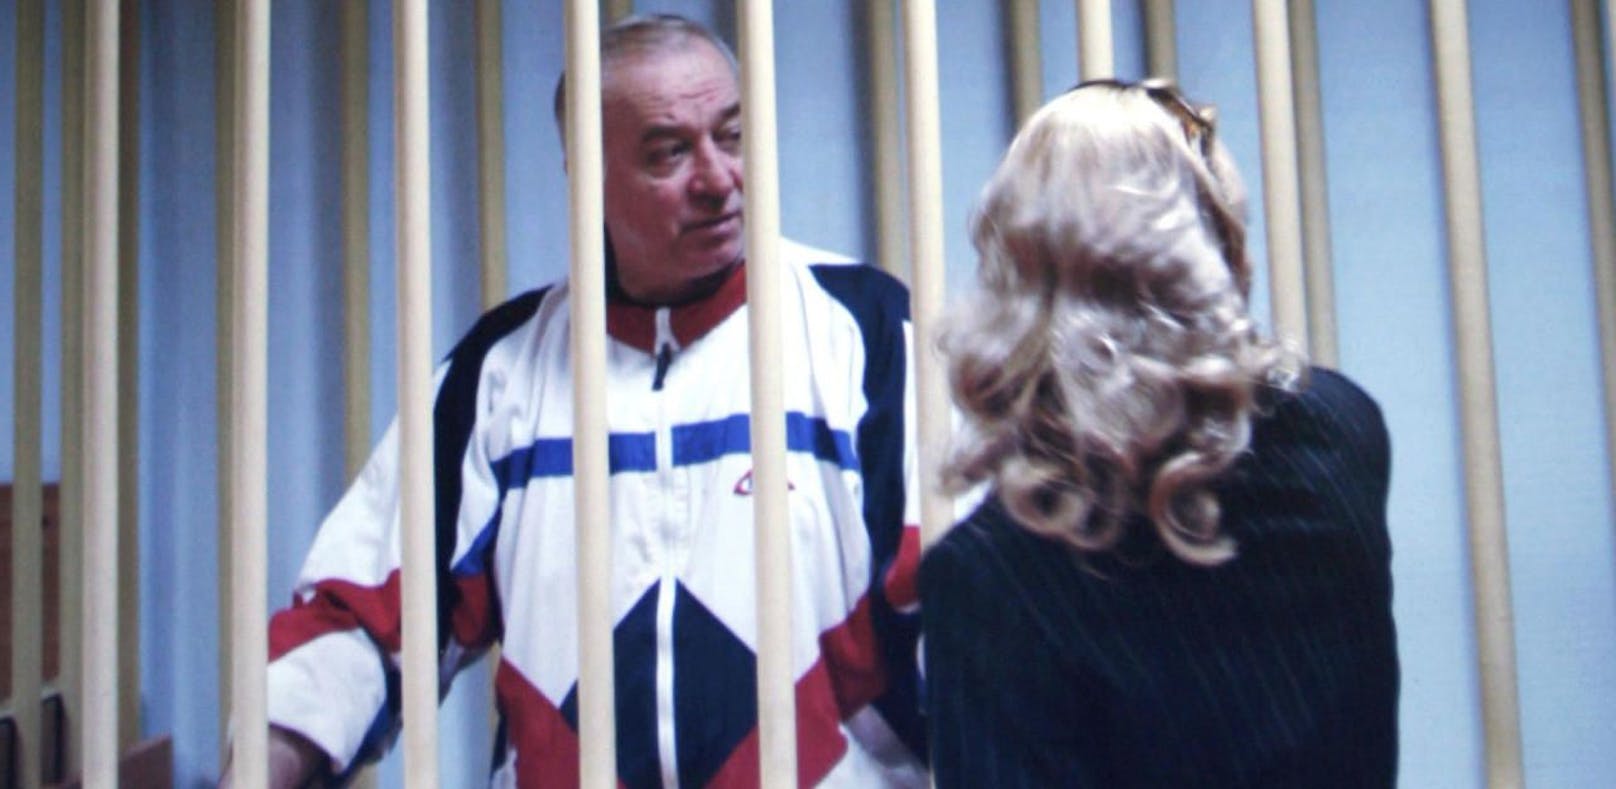 Der 66-jährige Ex-Spion Sergei Skripal verkaufte russische Geheimdienstinformationen an Großbritannien. Nun ringt er mit dem Tod.